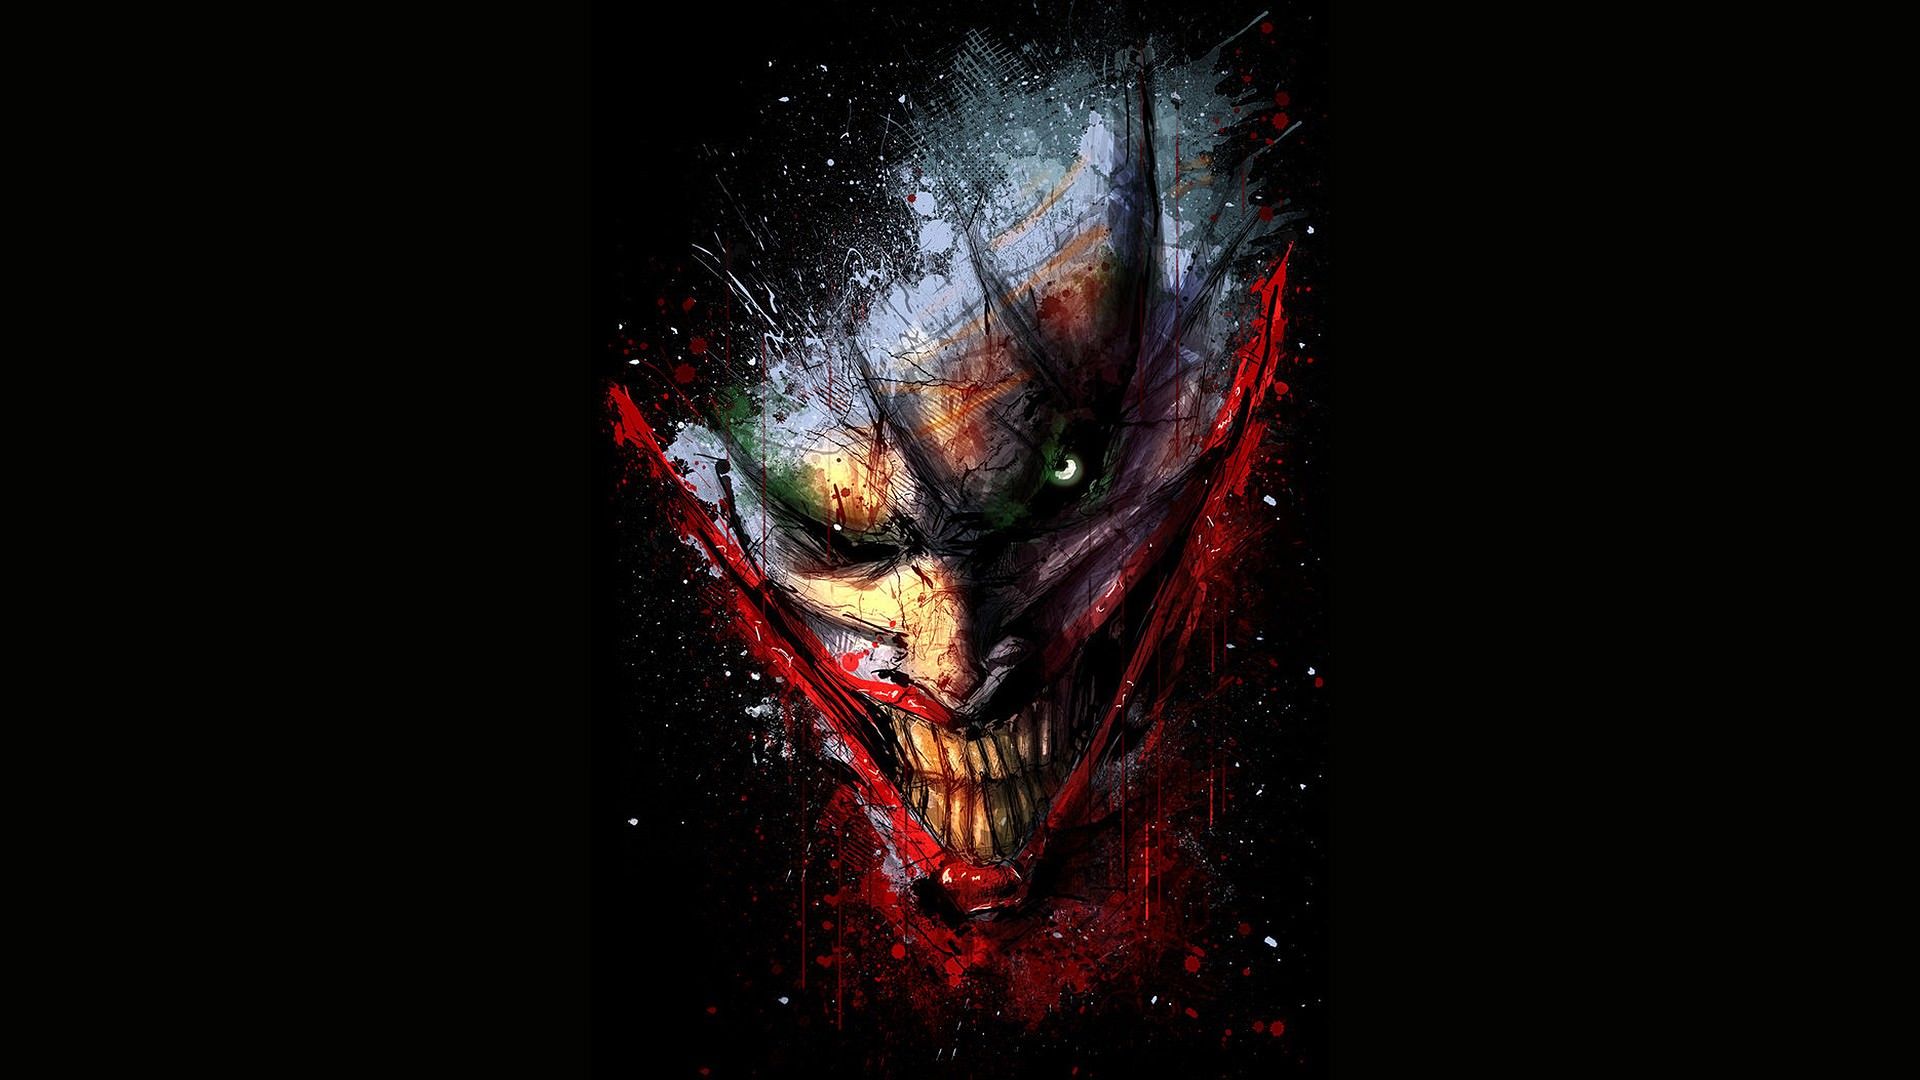 Free download DigitalArtio DC Comics The Joker Wallpaper DC Comics